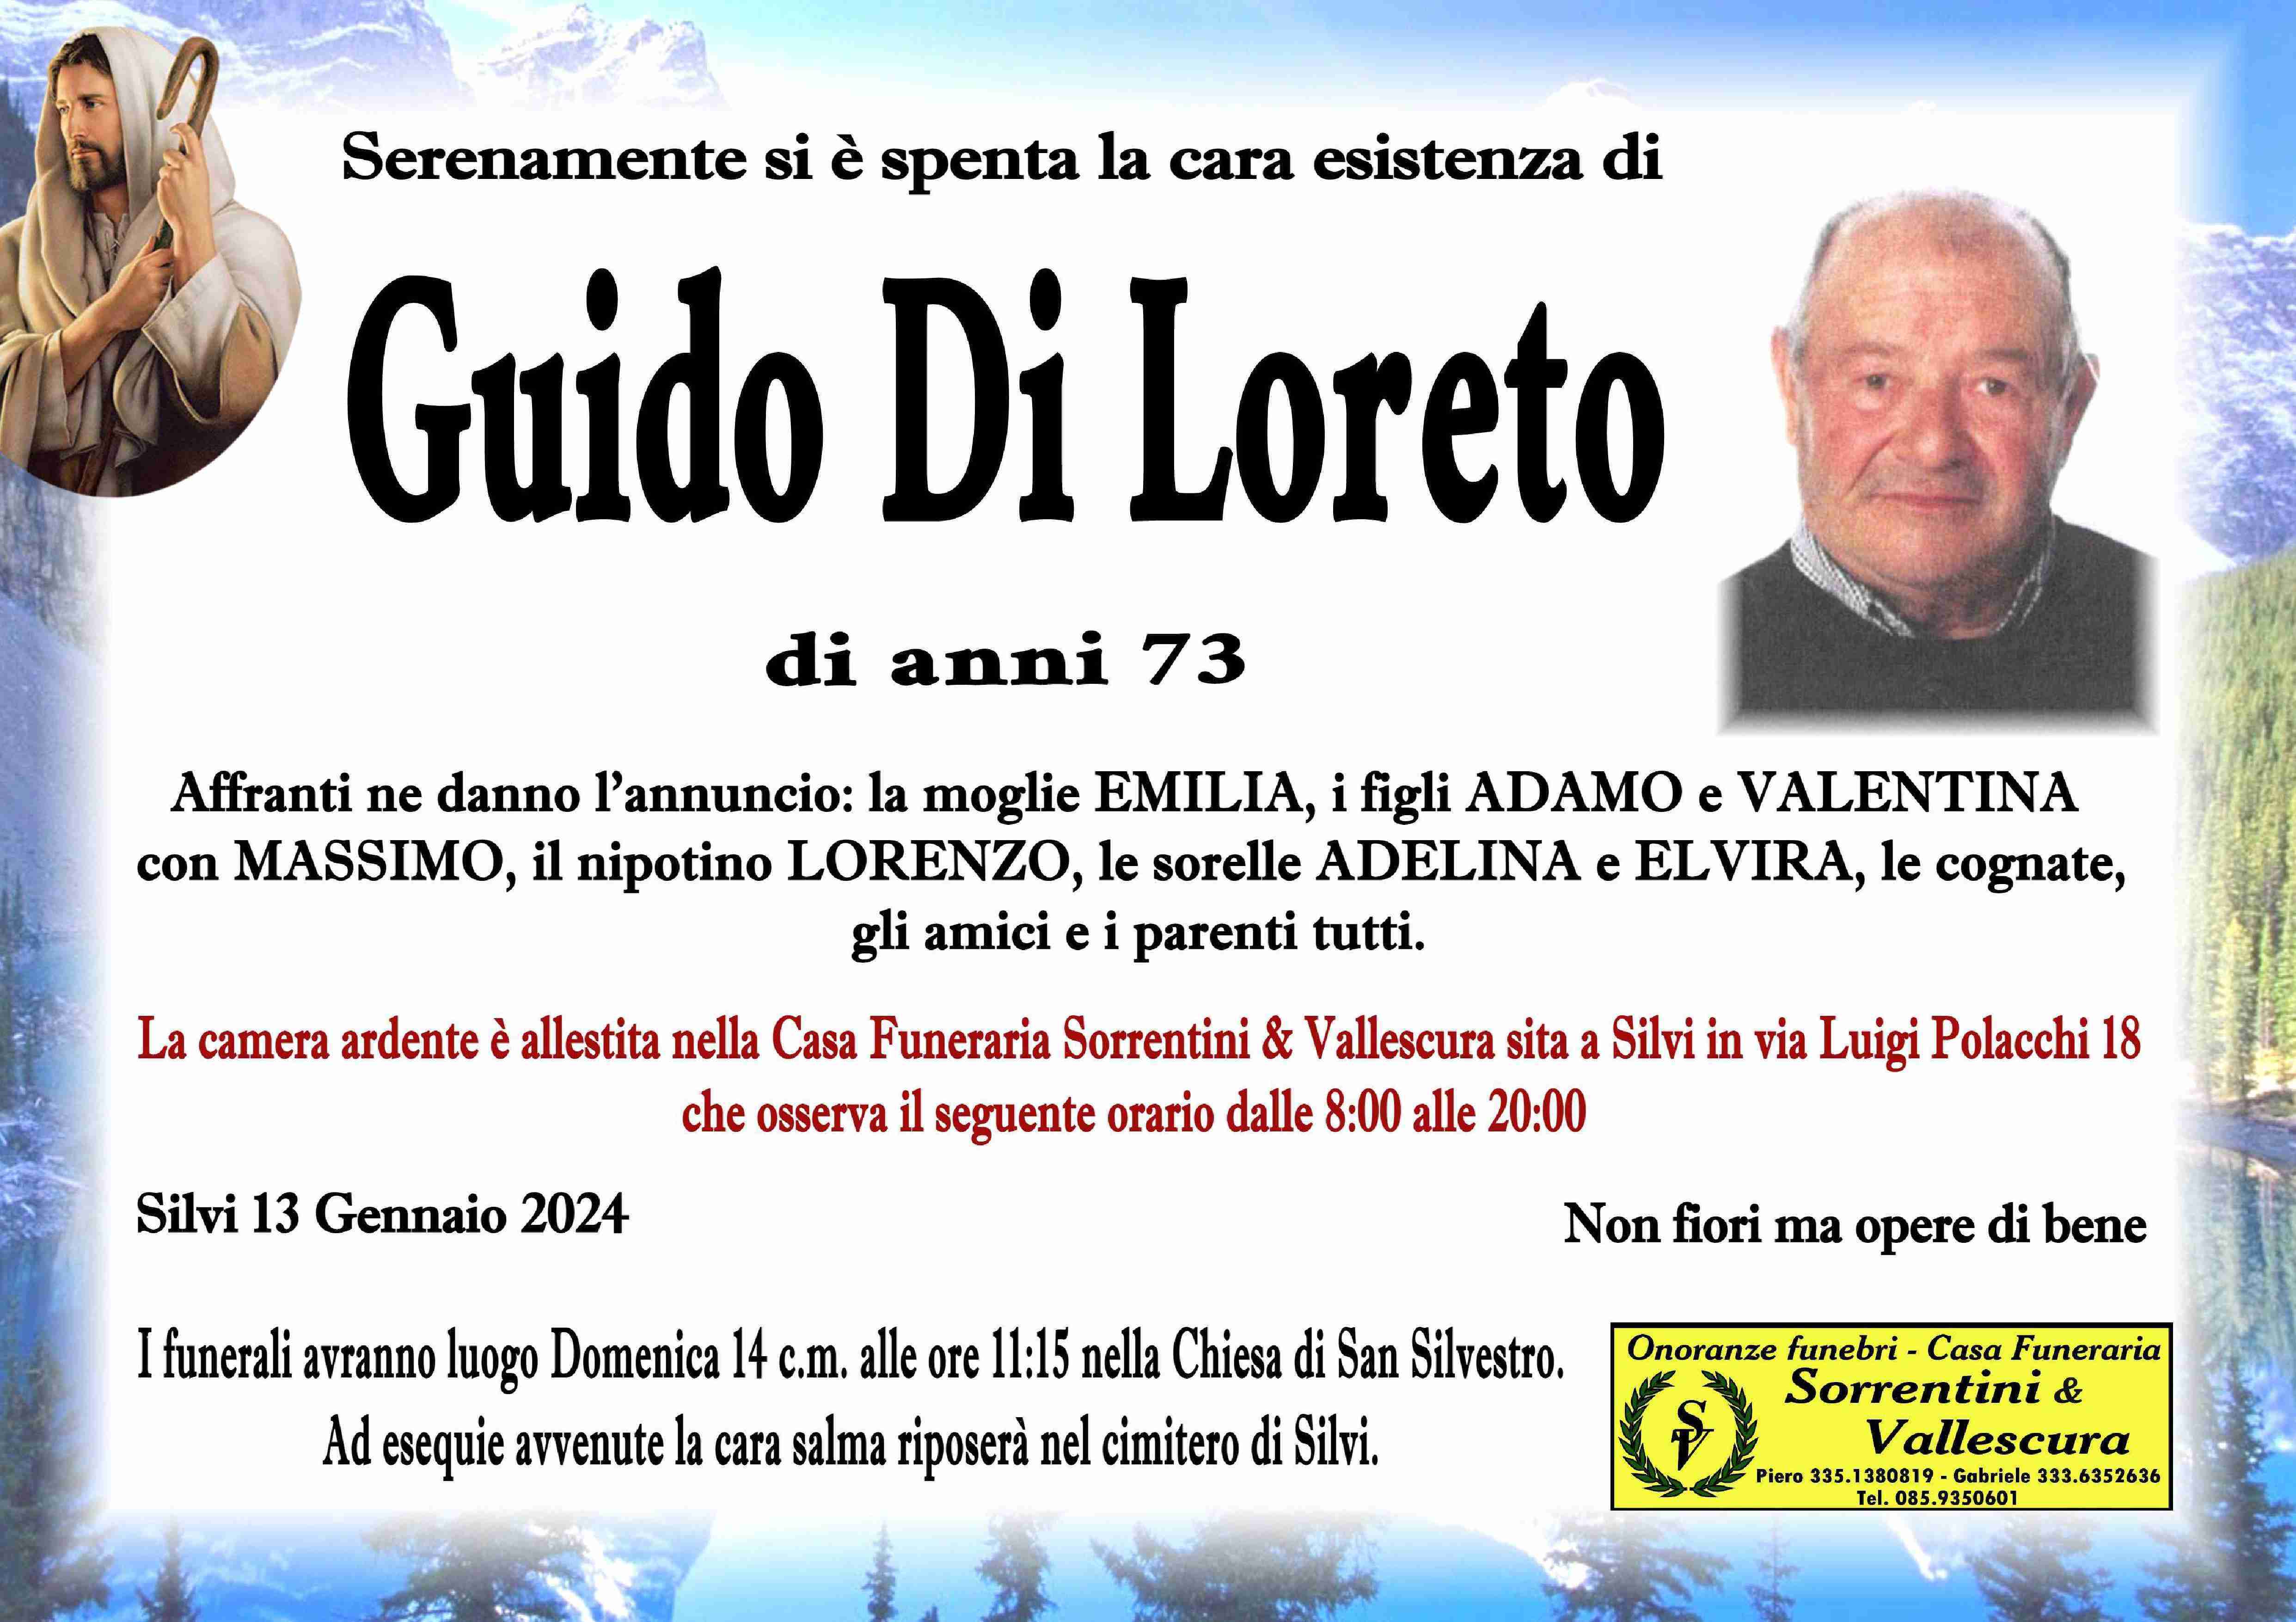 Guido Di Loreto